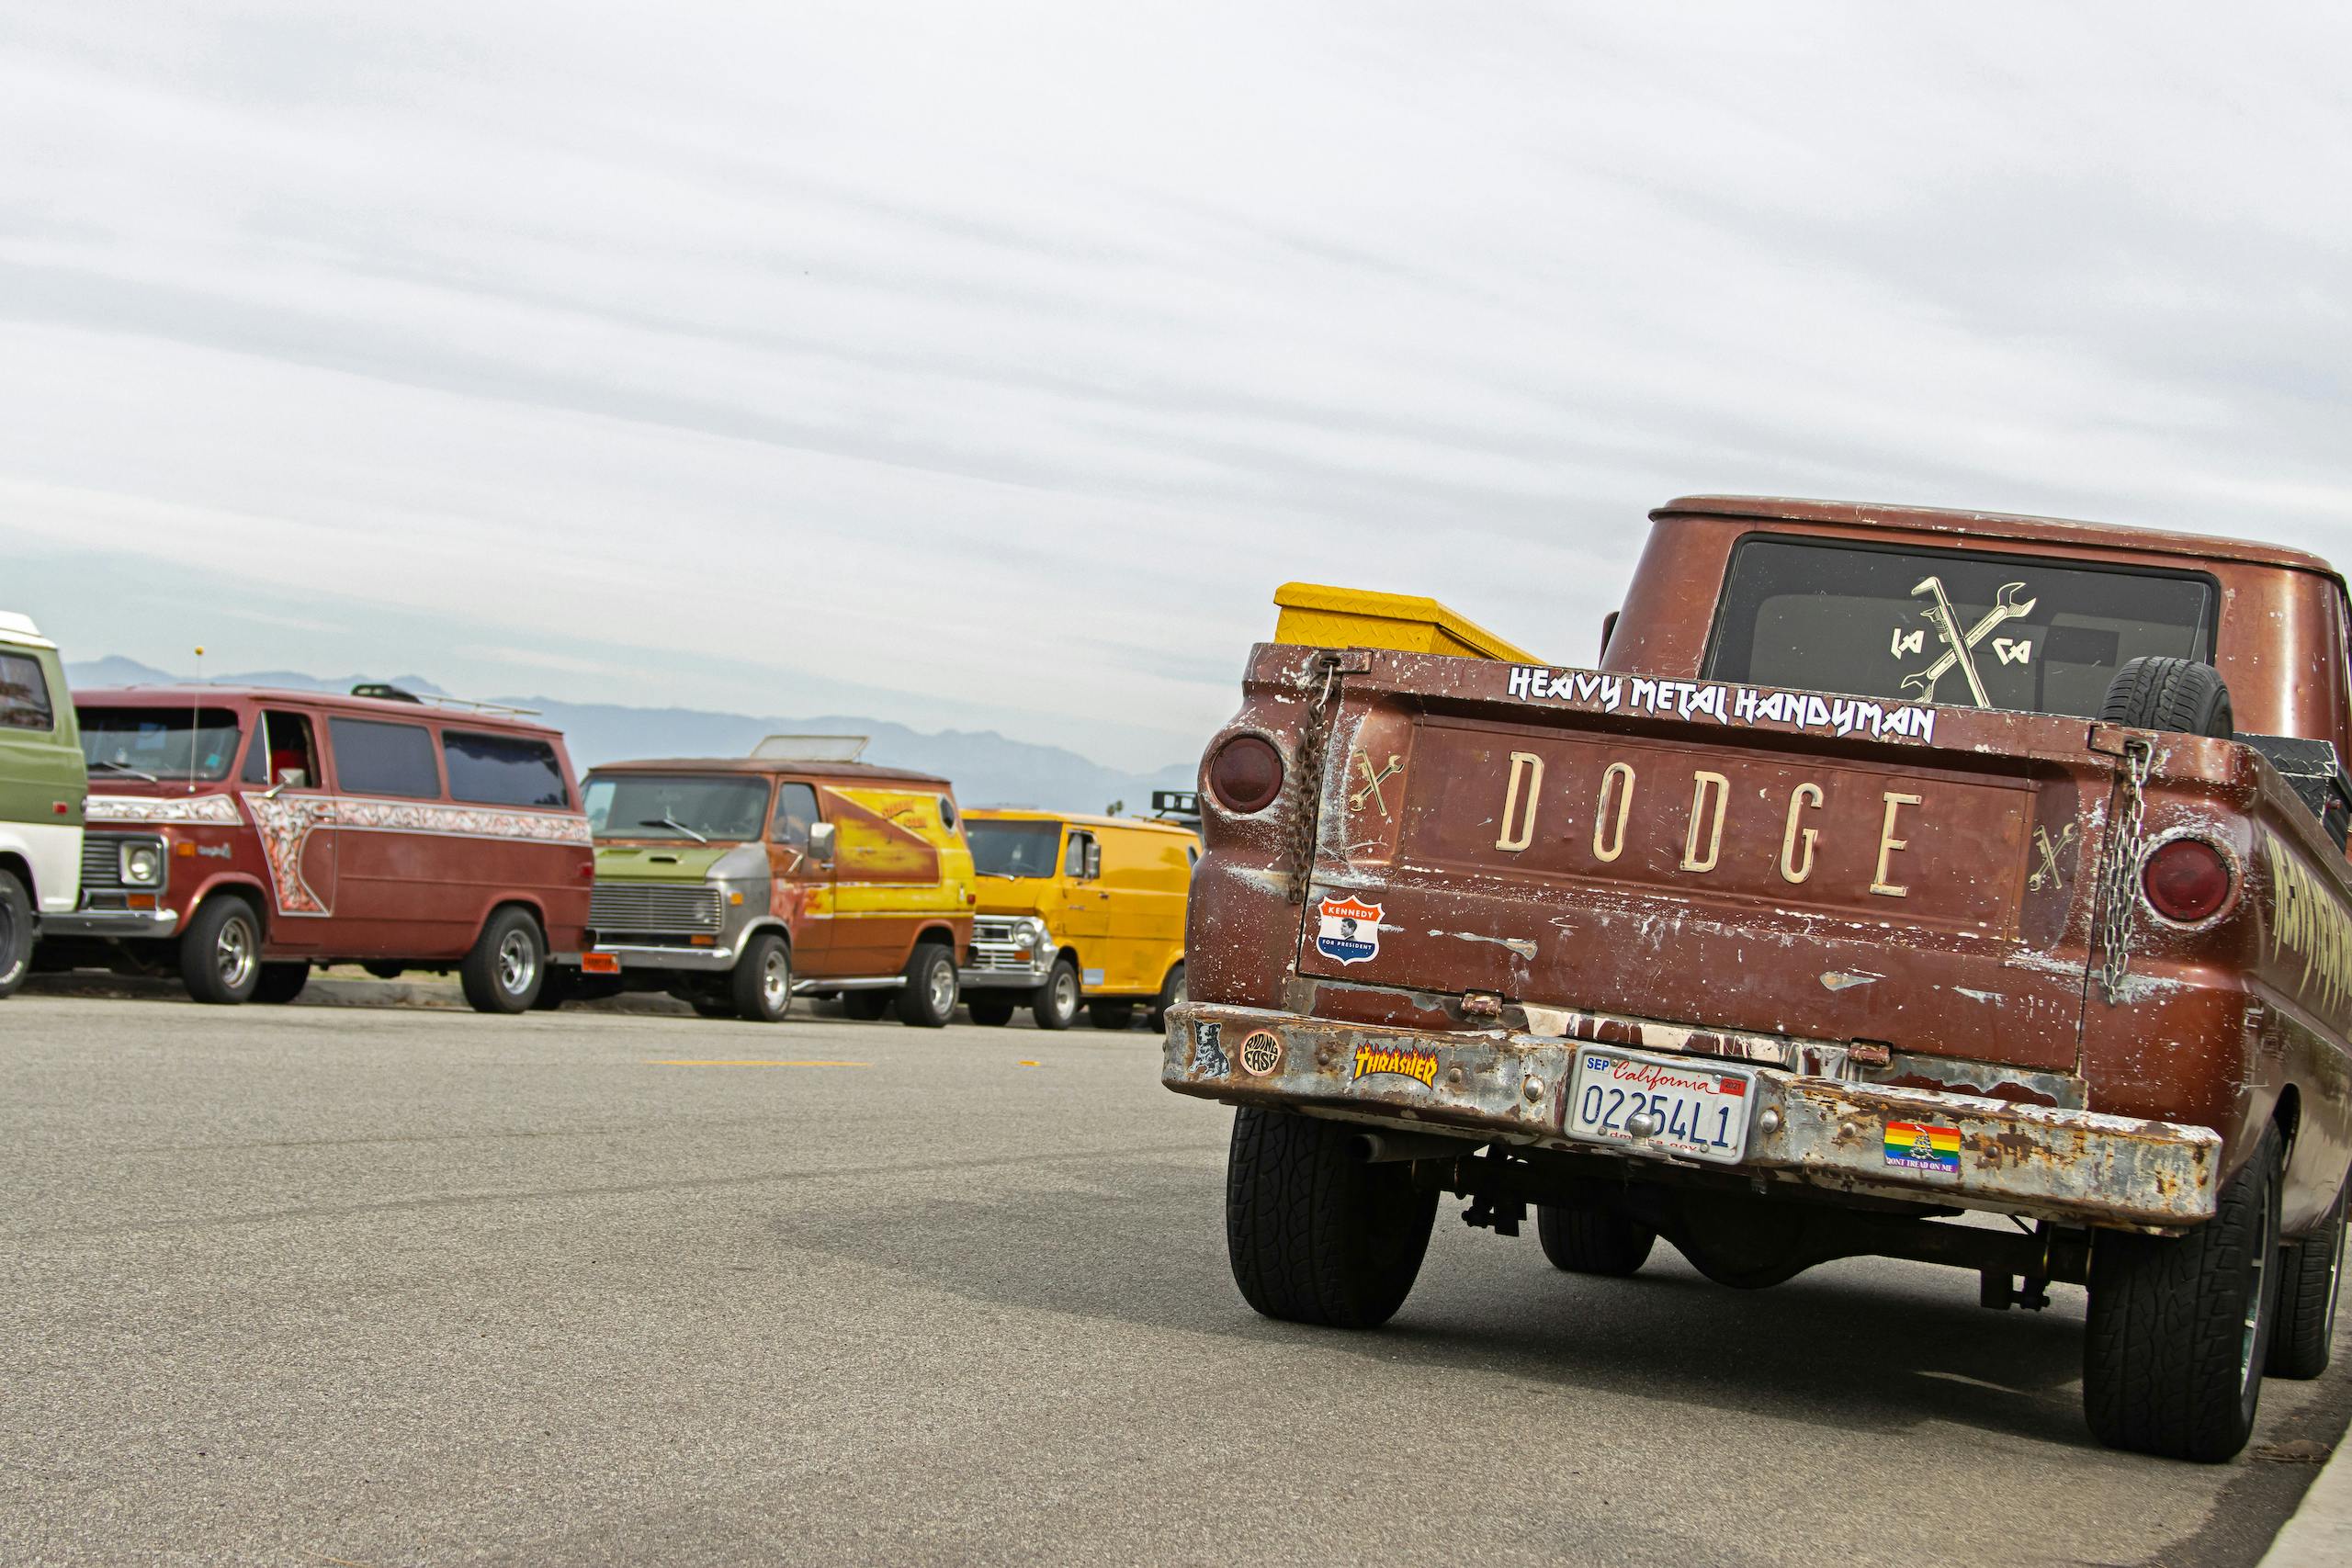 So-Cal Slow Ride Van Run dodge tailgate and vans